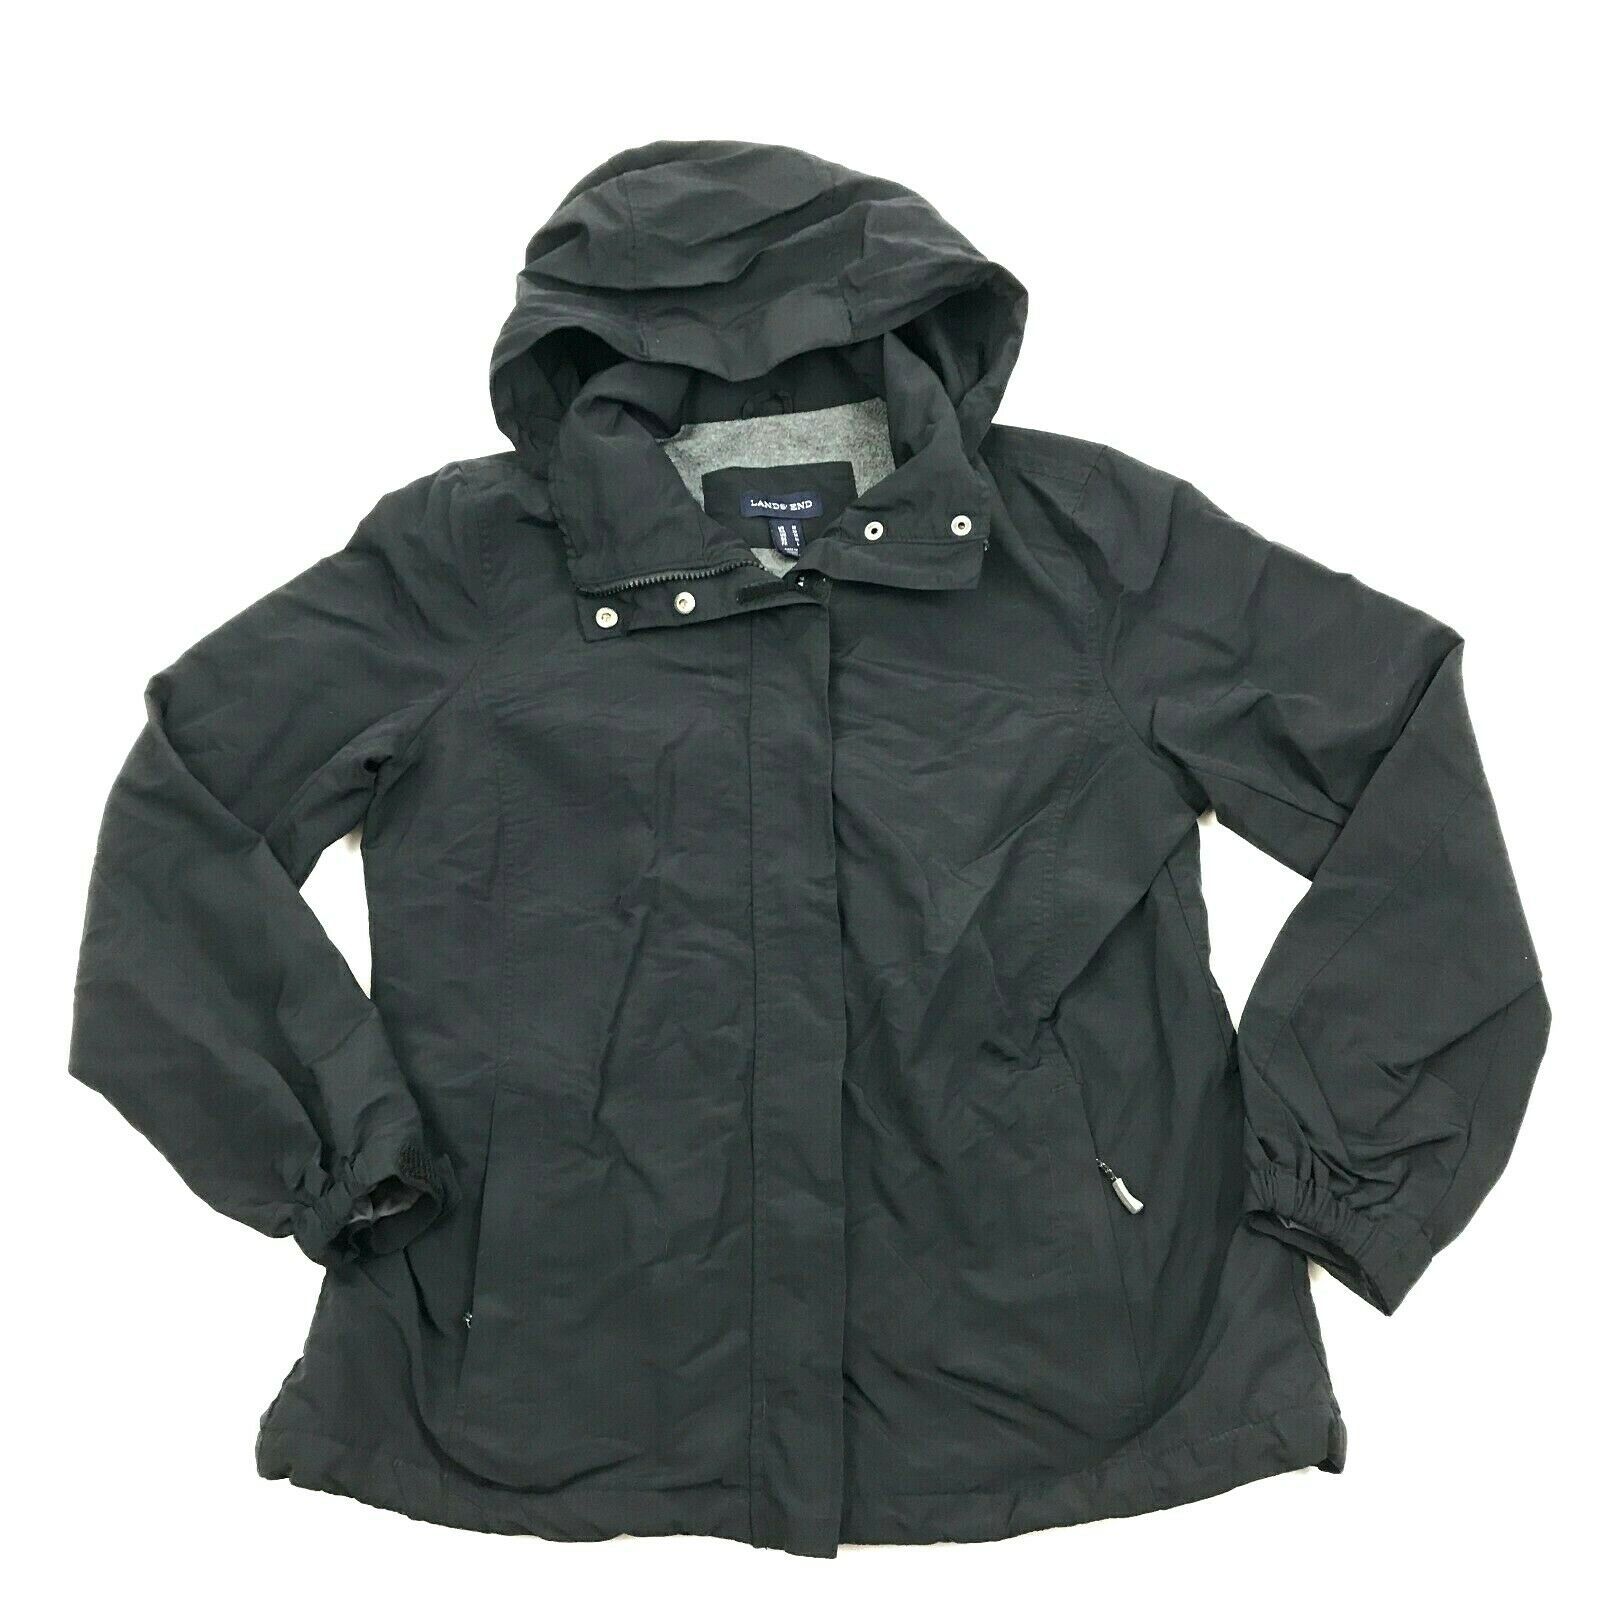 Lands End Men's Black Softshell Jacket Fleece Lined Parka Outdoor Coat ...